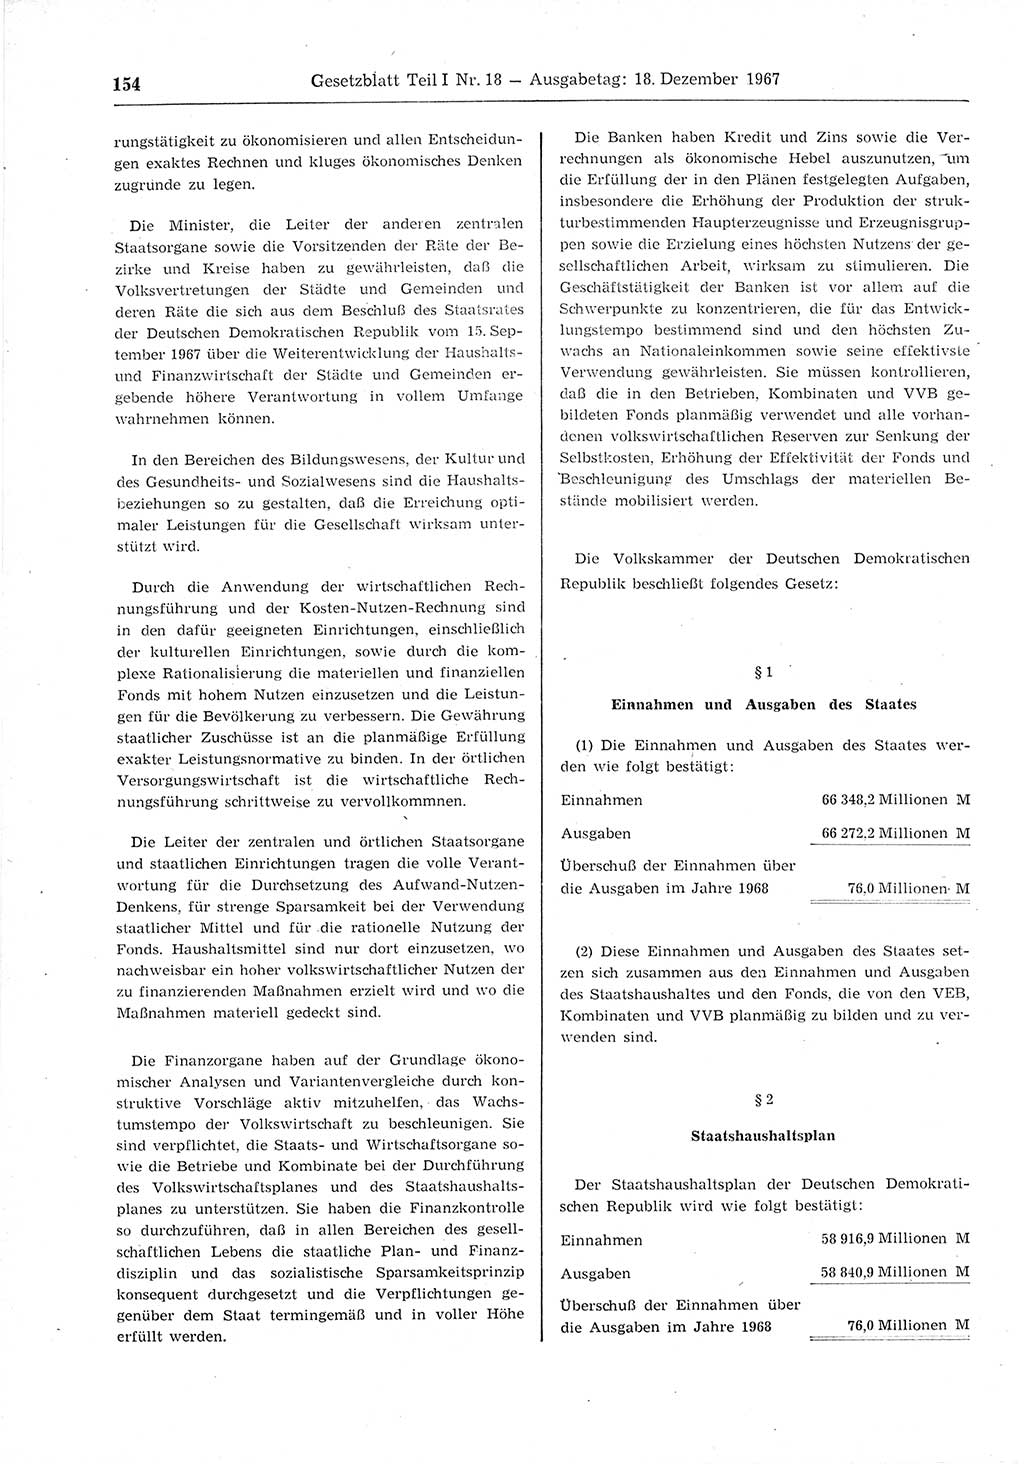 Gesetzblatt (GBl.) der Deutschen Demokratischen Republik (DDR) Teil Ⅰ 1967, Seite 154 (GBl. DDR Ⅰ 1967, S. 154)